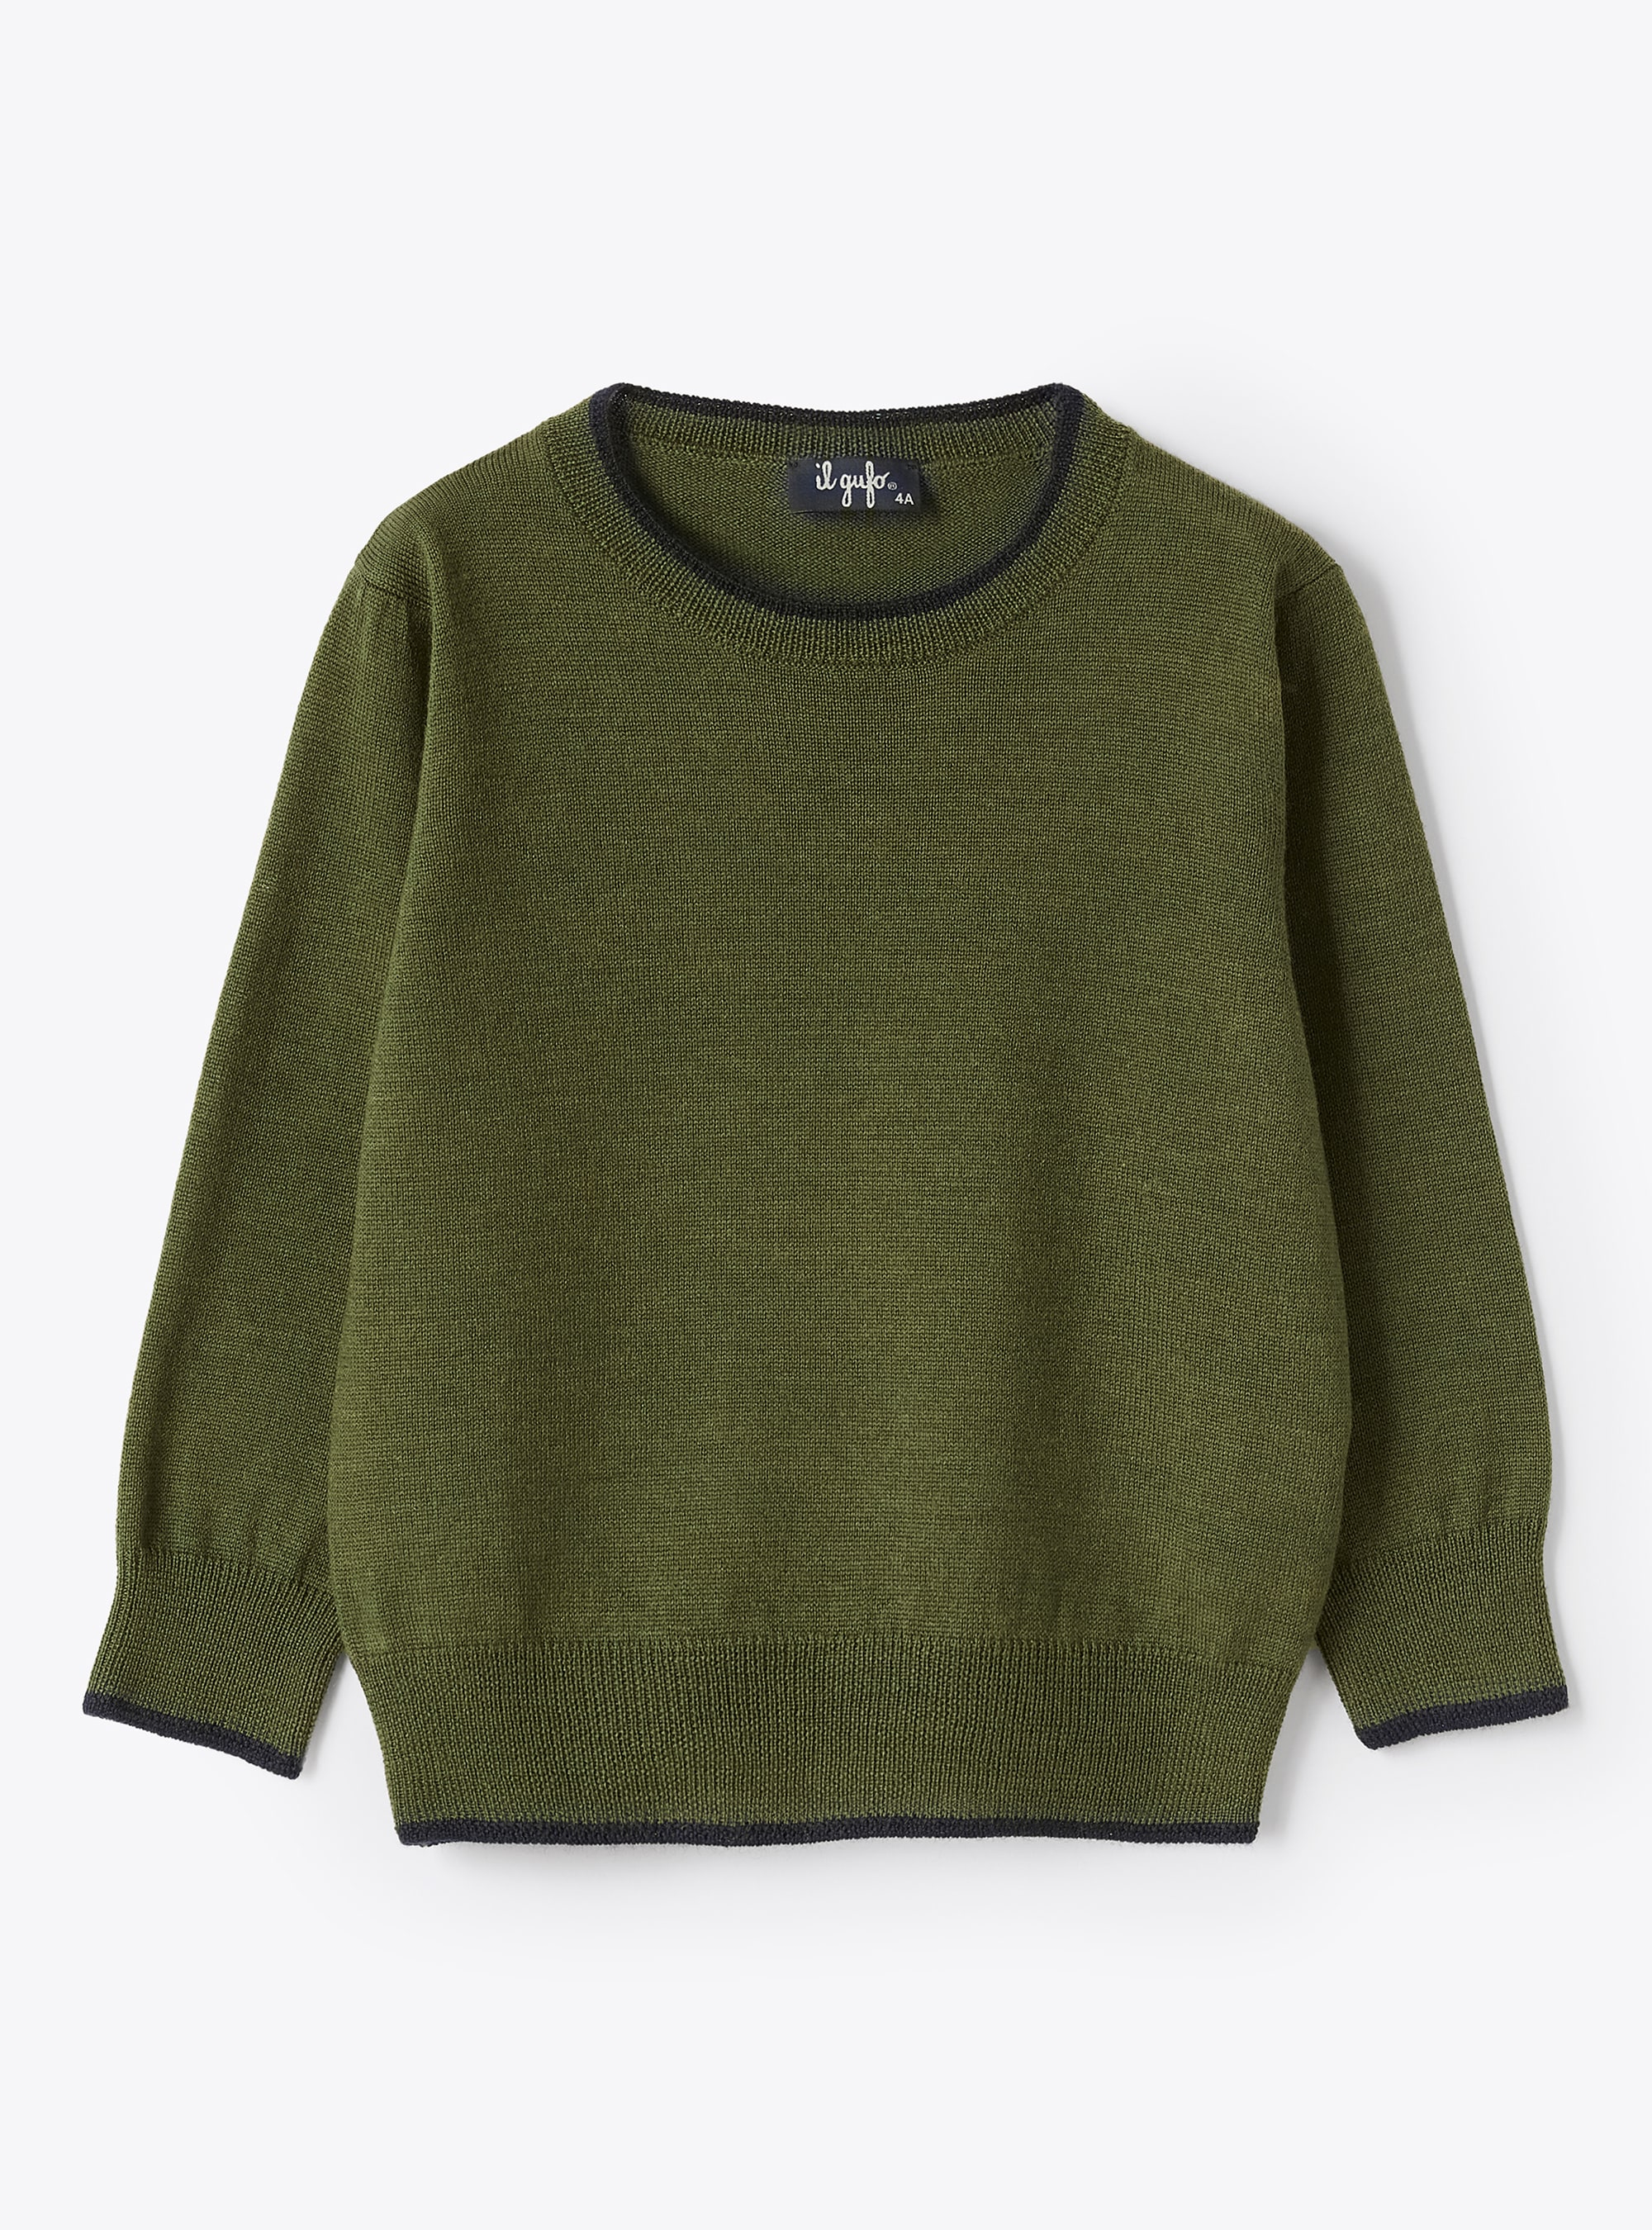 Maglia in lana con profili a contrasto - Verde | Il Gufo